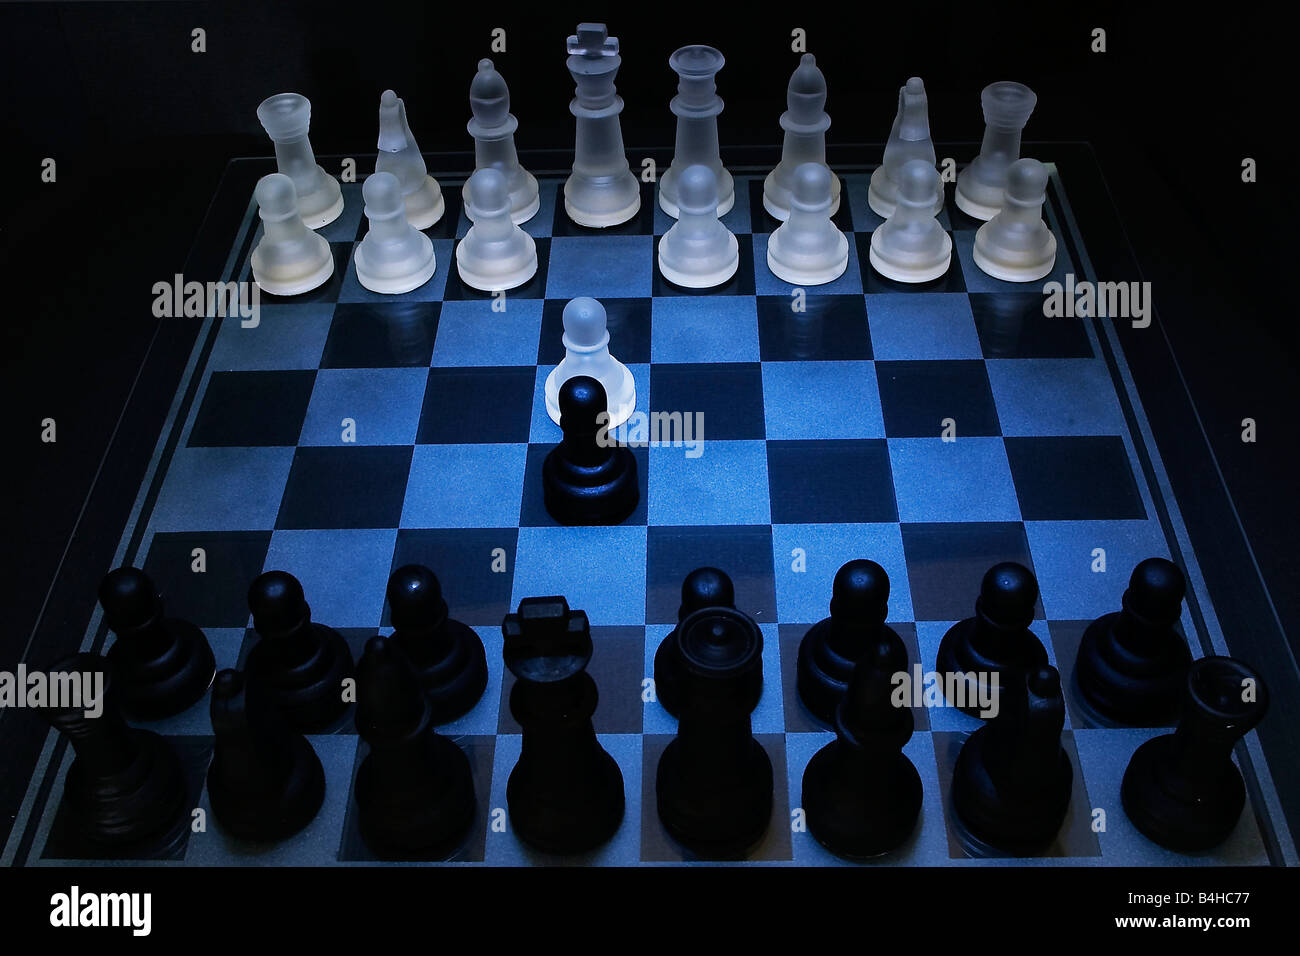 Elevato angolo di visione dei pezzi di scacchi sulla scacchiera Foto Stock